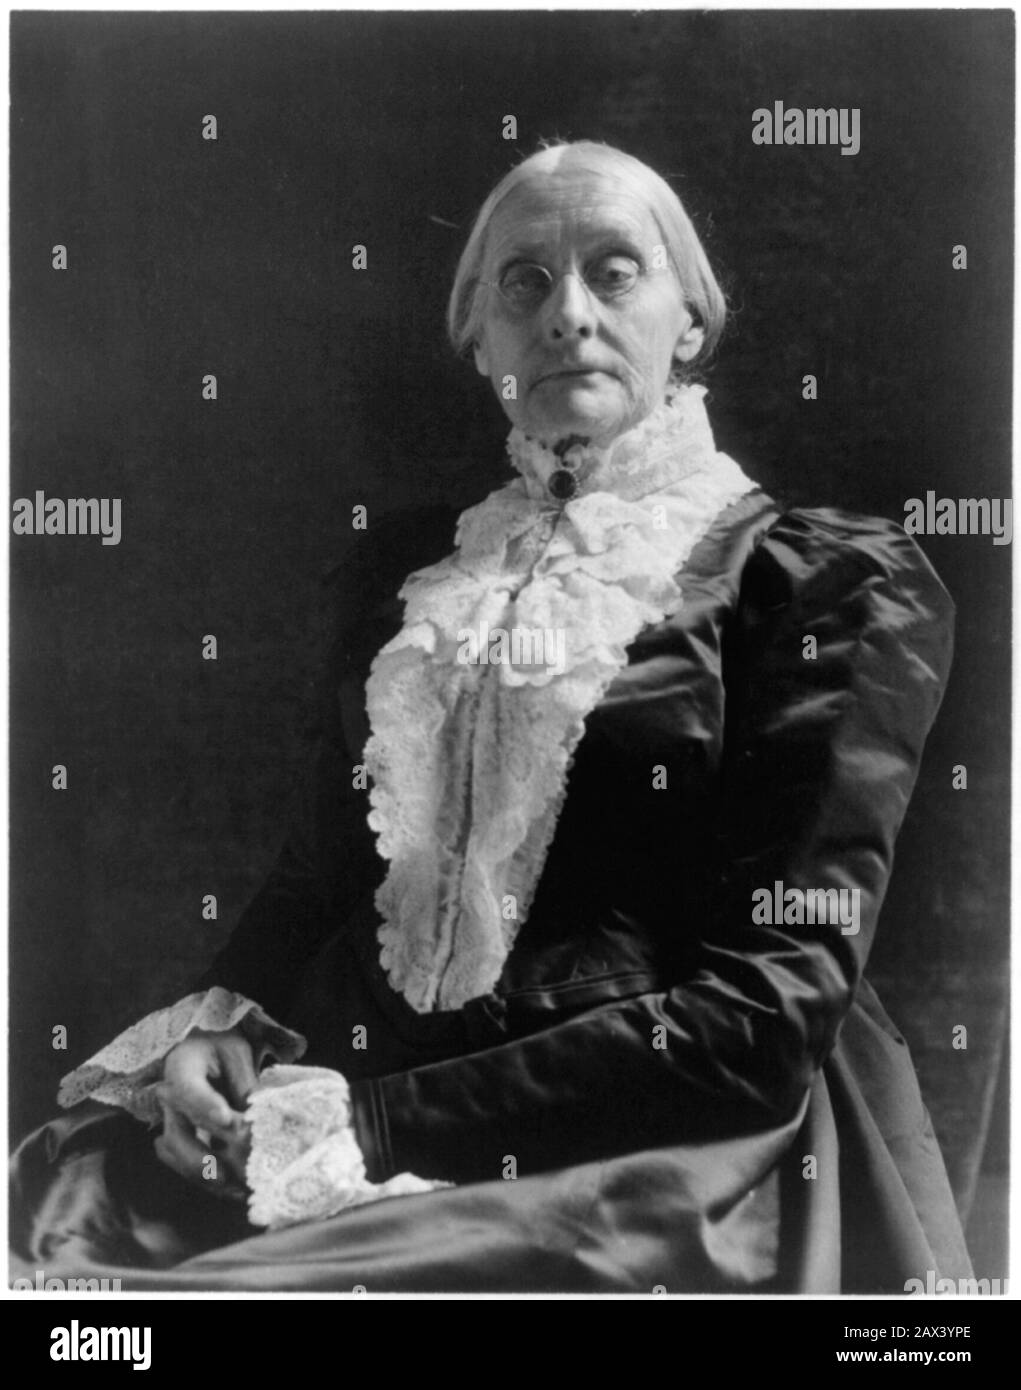 1895 ca , USA : The social activist abolitionist, and leading figure of the early woman's movement  SUSAN B. ANTHONY ( Susan Brownell , 1820 - 1906 ). Photo by  Frances Benjamin JOHNSTON ( 1864 - 1952 )  - SUFFRAGETTA - sufraggetta - Sufragist - POLITICO - POLITICIAN - POLITICA - POLITIC - FEMMINISMO - FEMMINISTA  - FEMMINISTE - SUFFRAGETTE - USA - ritratto - portrait  - FEMMINISM - FEMMINIST - SUFFRAGIO UNIVERSALE - VOTO POLITICO ALLE DONNE - FASHION - MODA  - OTTOCENTO - 800's - '800 - donna anziana vecchia - ancient old woman - lace - pizzo  - chignon - lens - occhiali da vista ----  Archiv Stock Photo